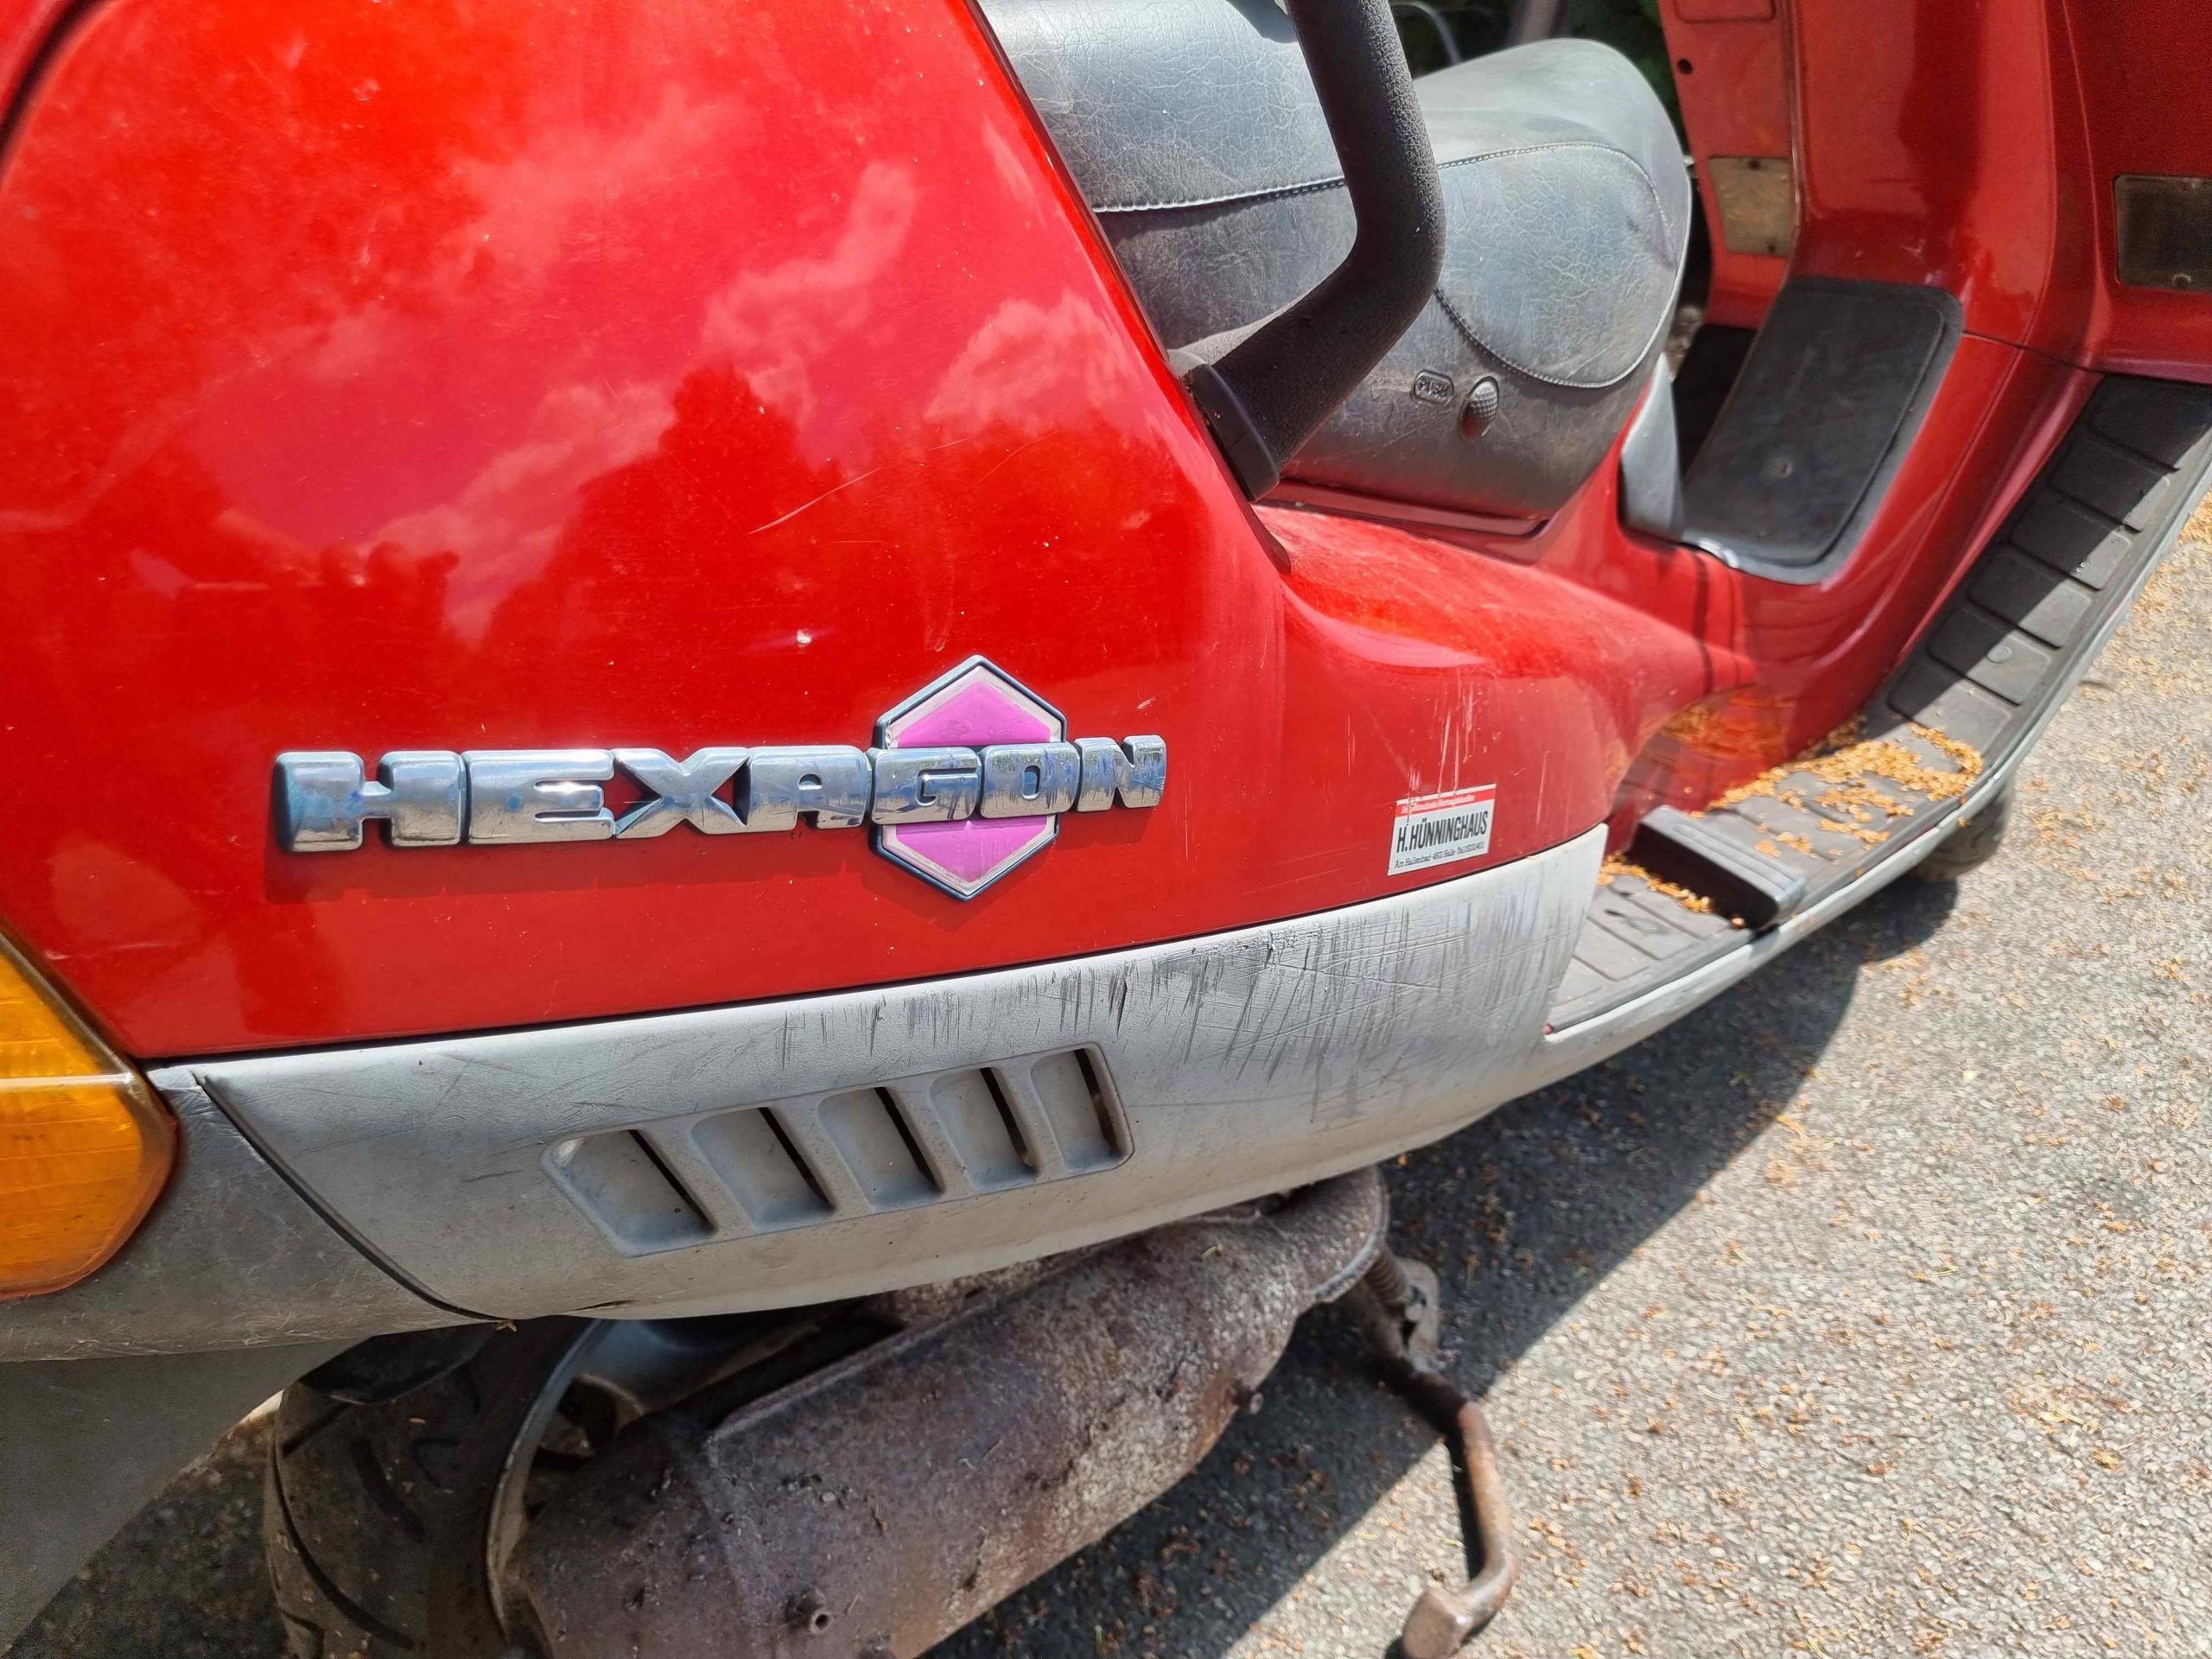 Piaggio Hexagon Roller in rot. Mit einer vom Tacho abgelesenen Laufleistung von 32.002 Km